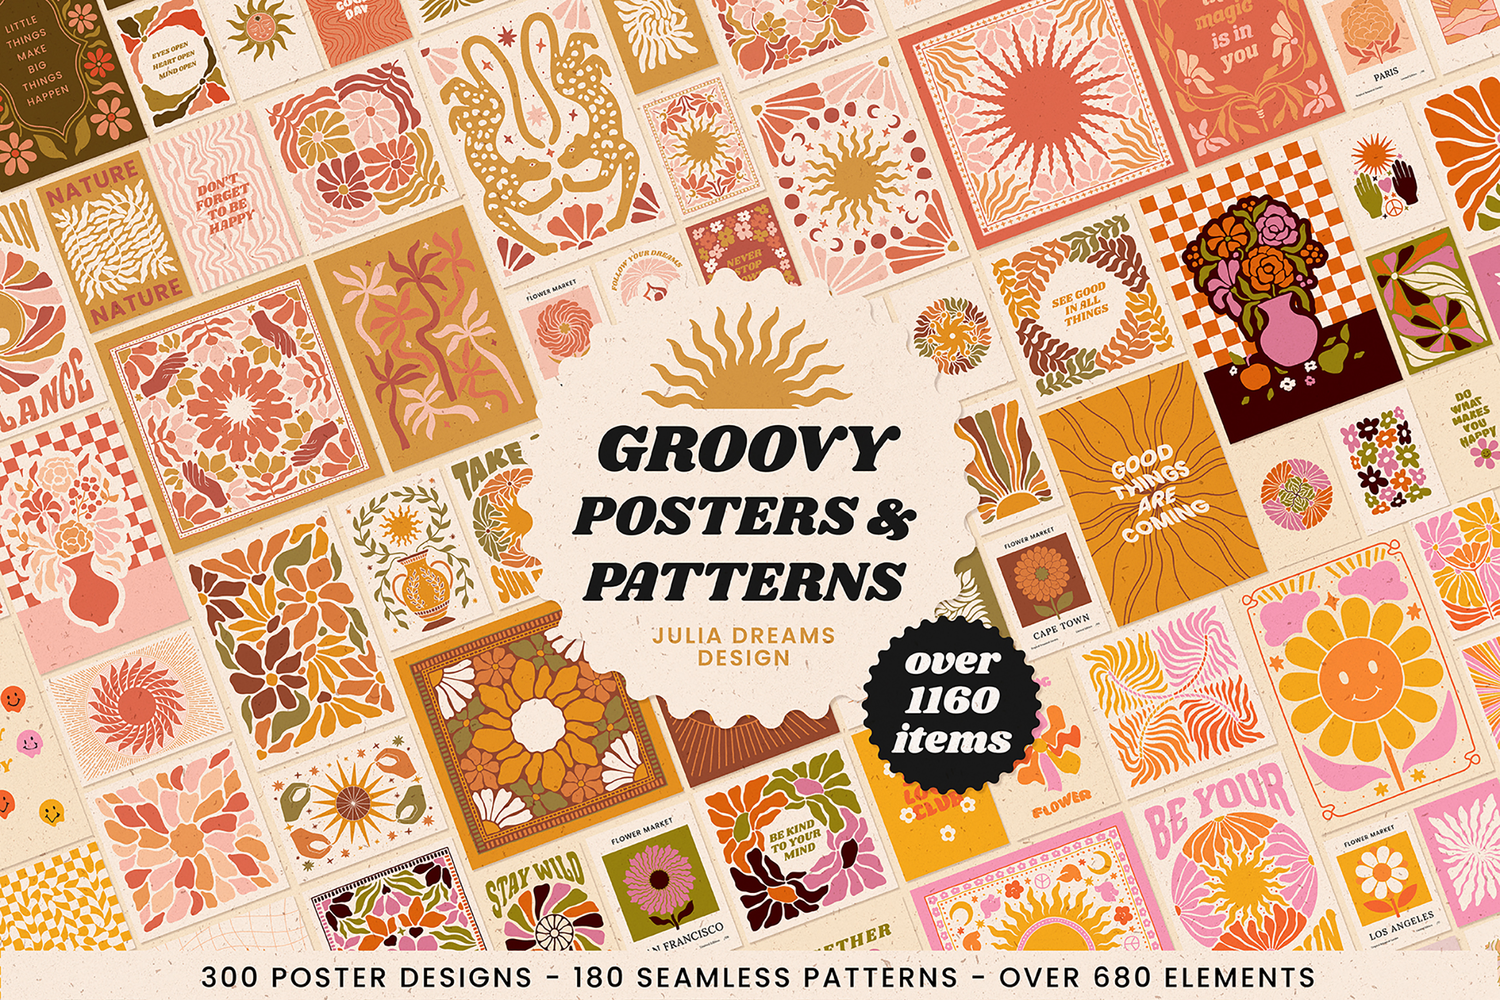 5325 波西米亚风格的抽象Groovy迷幻海报和花卉纹理图案素材包-Groovy Boho Posters Patterns Flower 70s@GOOODME.COM